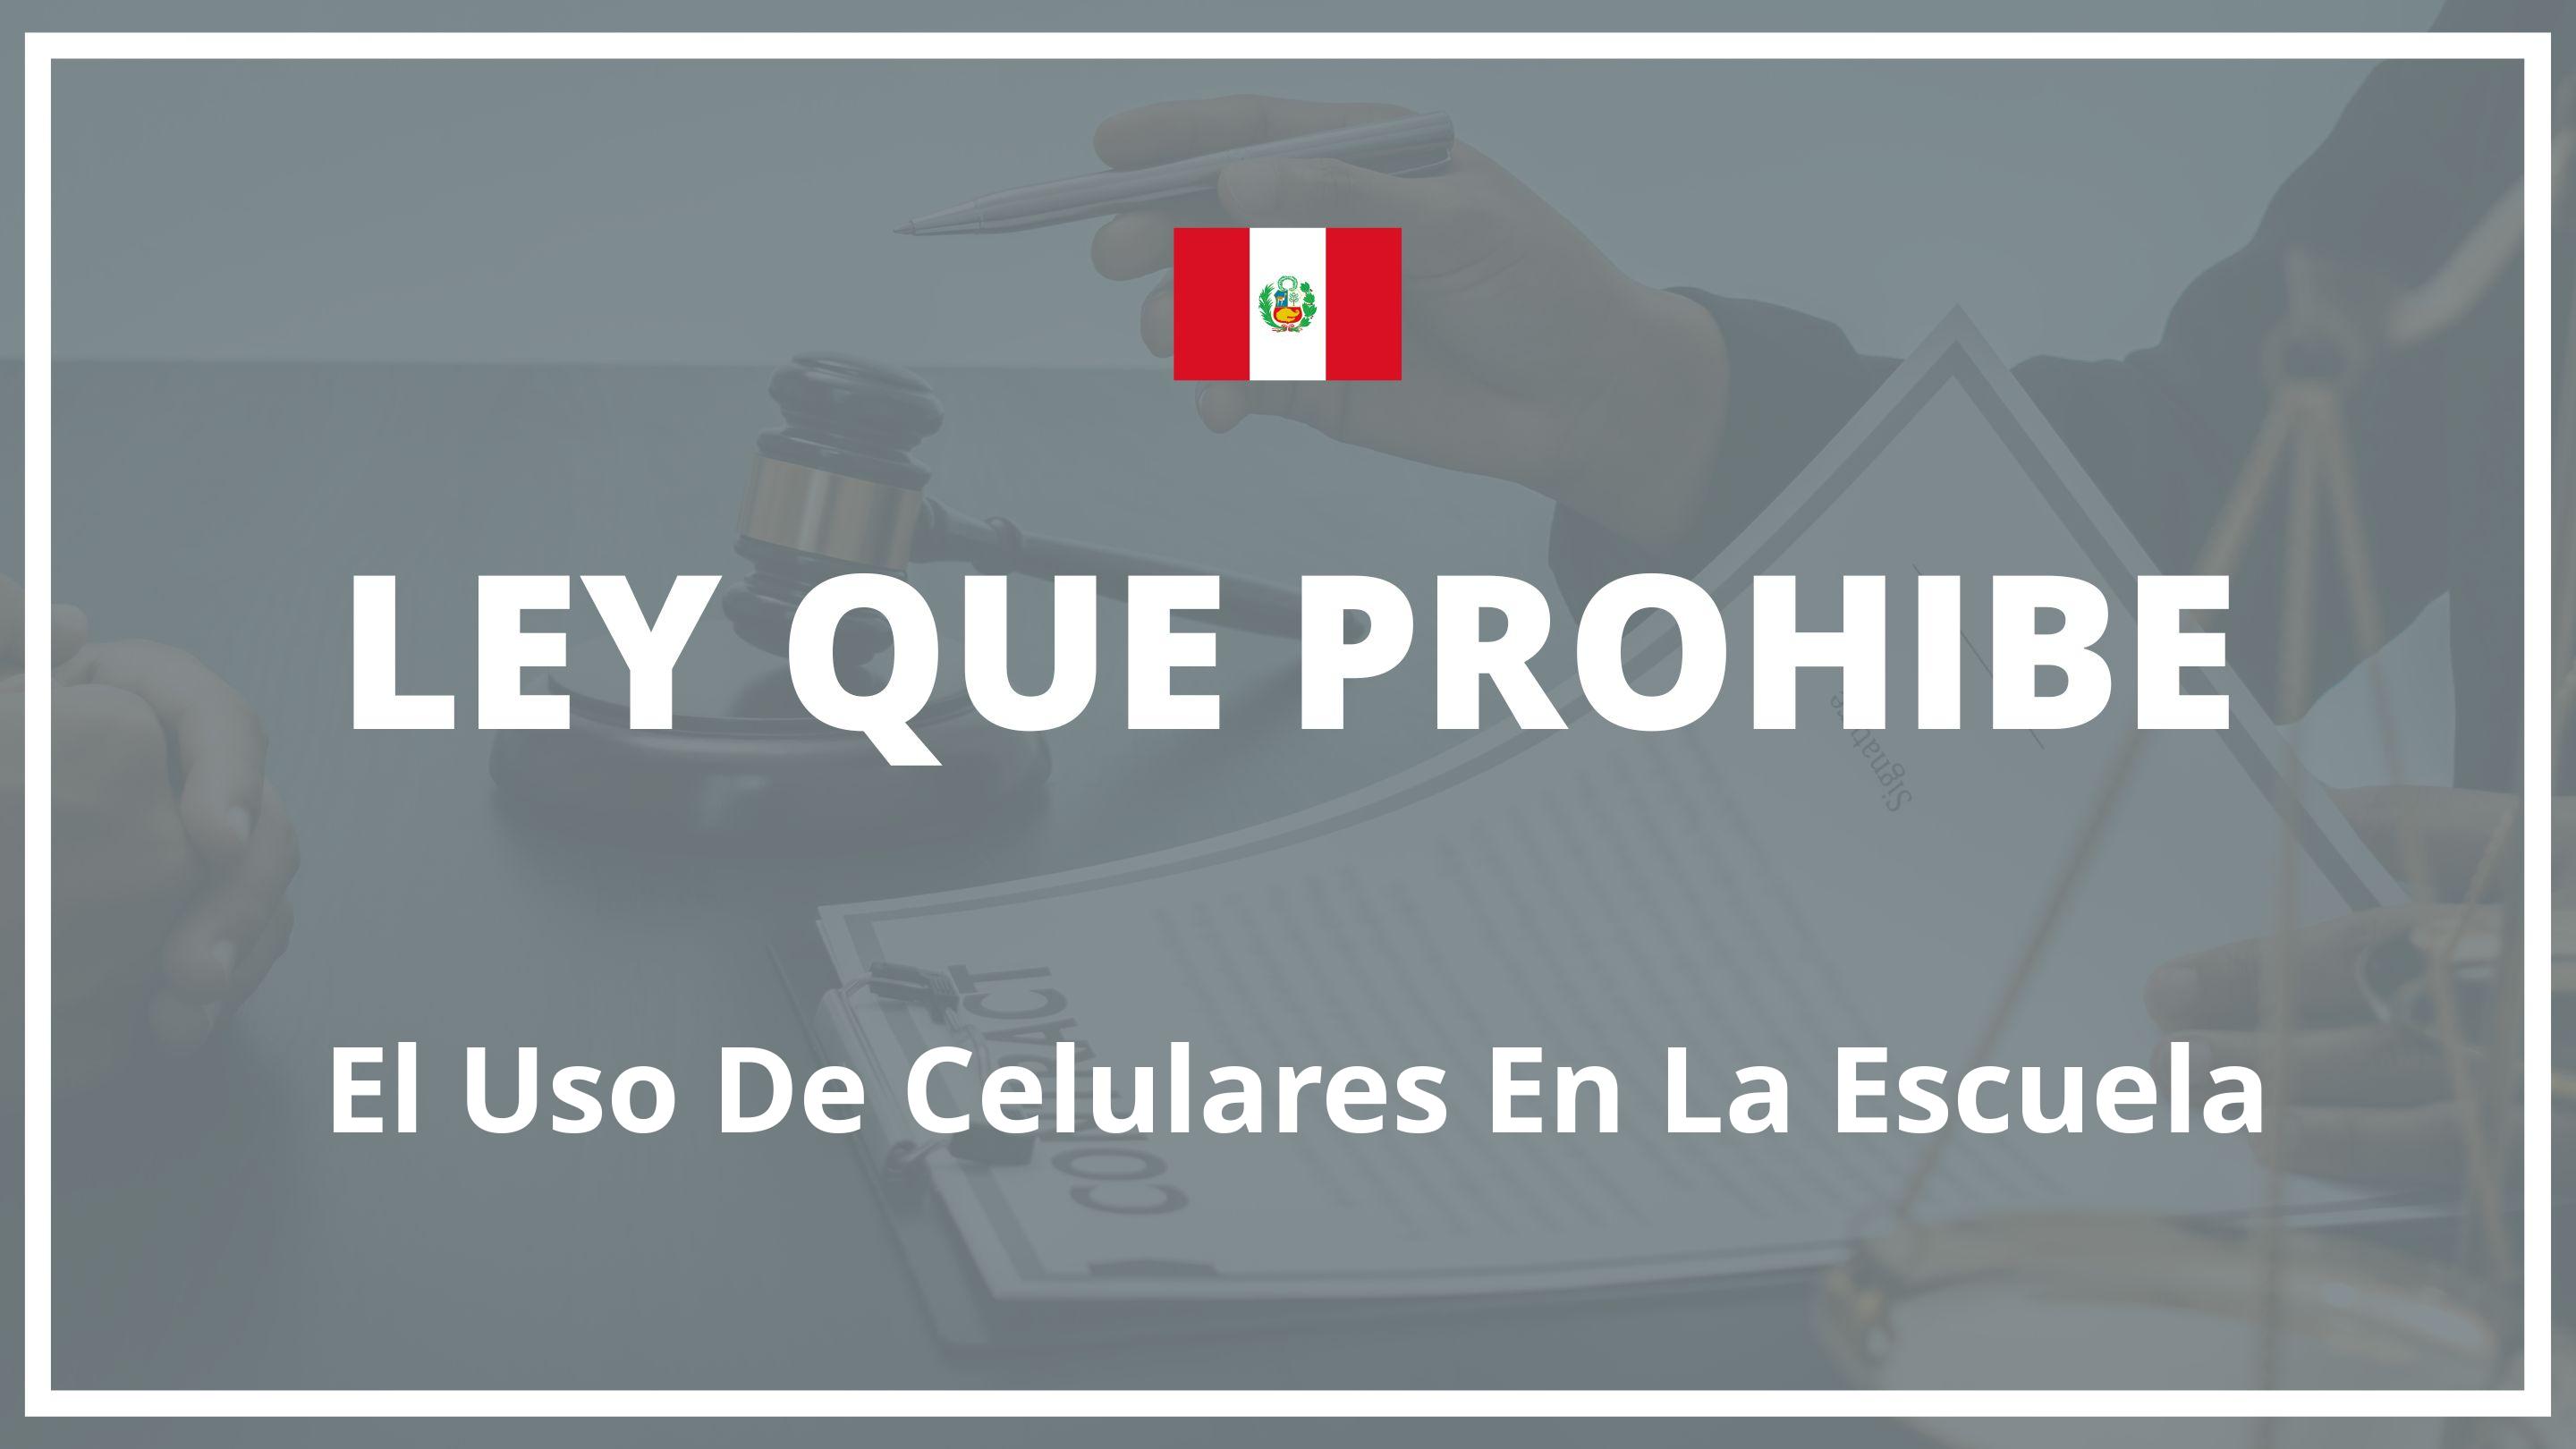 Ley que prohibe el uso de celulares en la escuela Peru